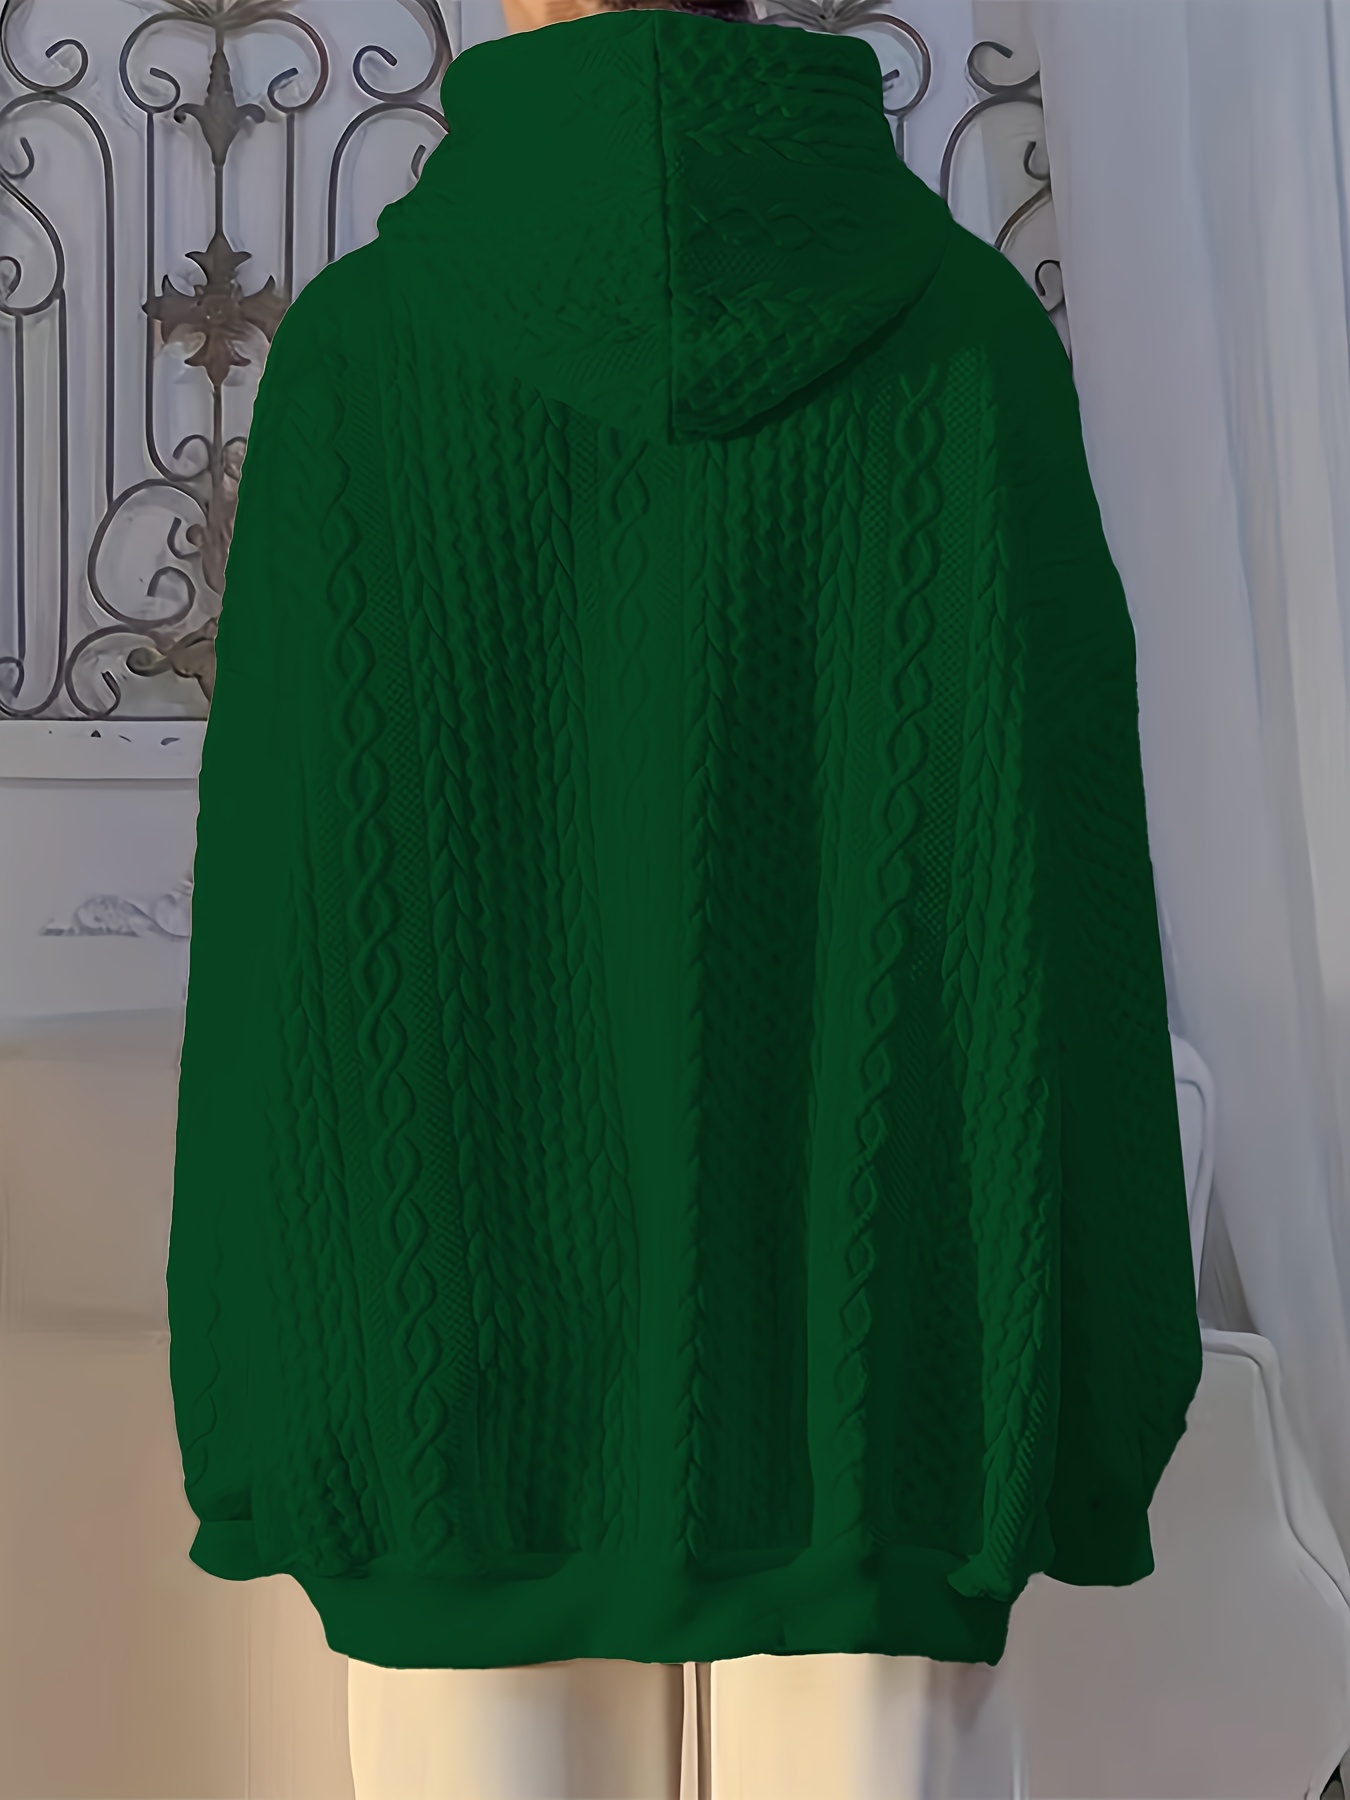 solid textured kangaroo pocket hoodie casual long sleeve drawstring hoodies sweatshirt womens clothing details 4